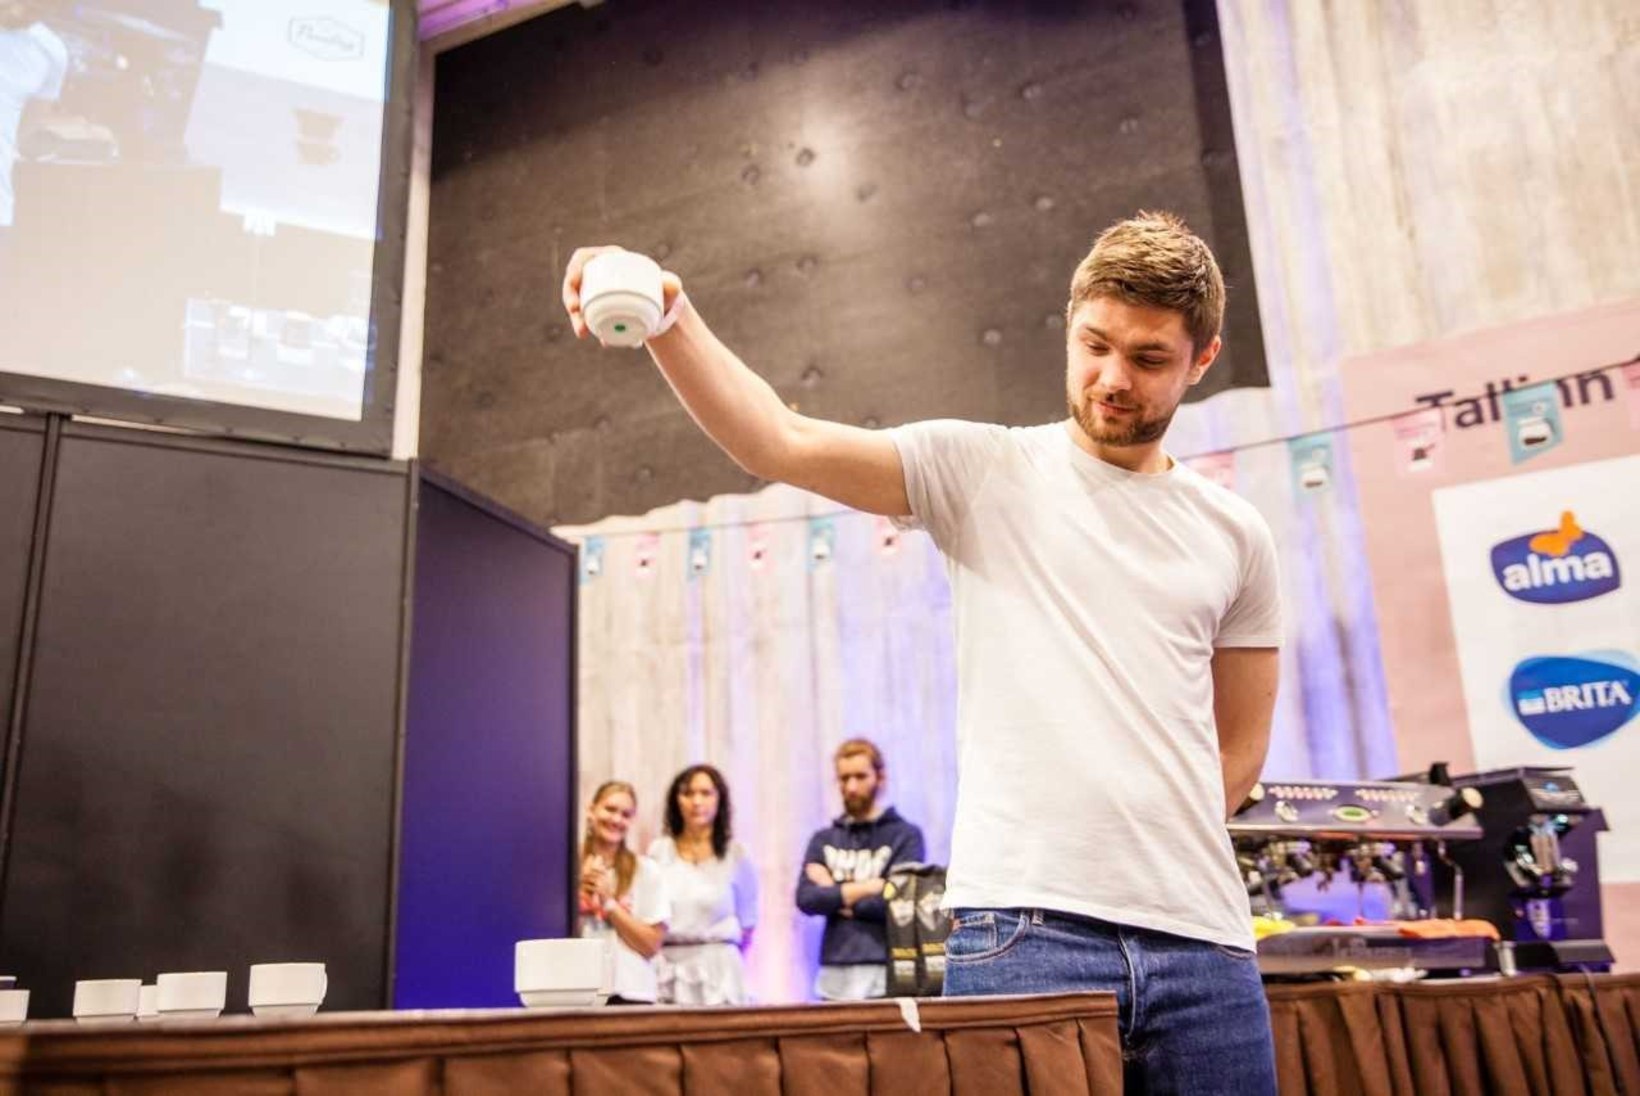 Palju õnne! Eesti parim kohvimaitsja on taas Henry Politanov!